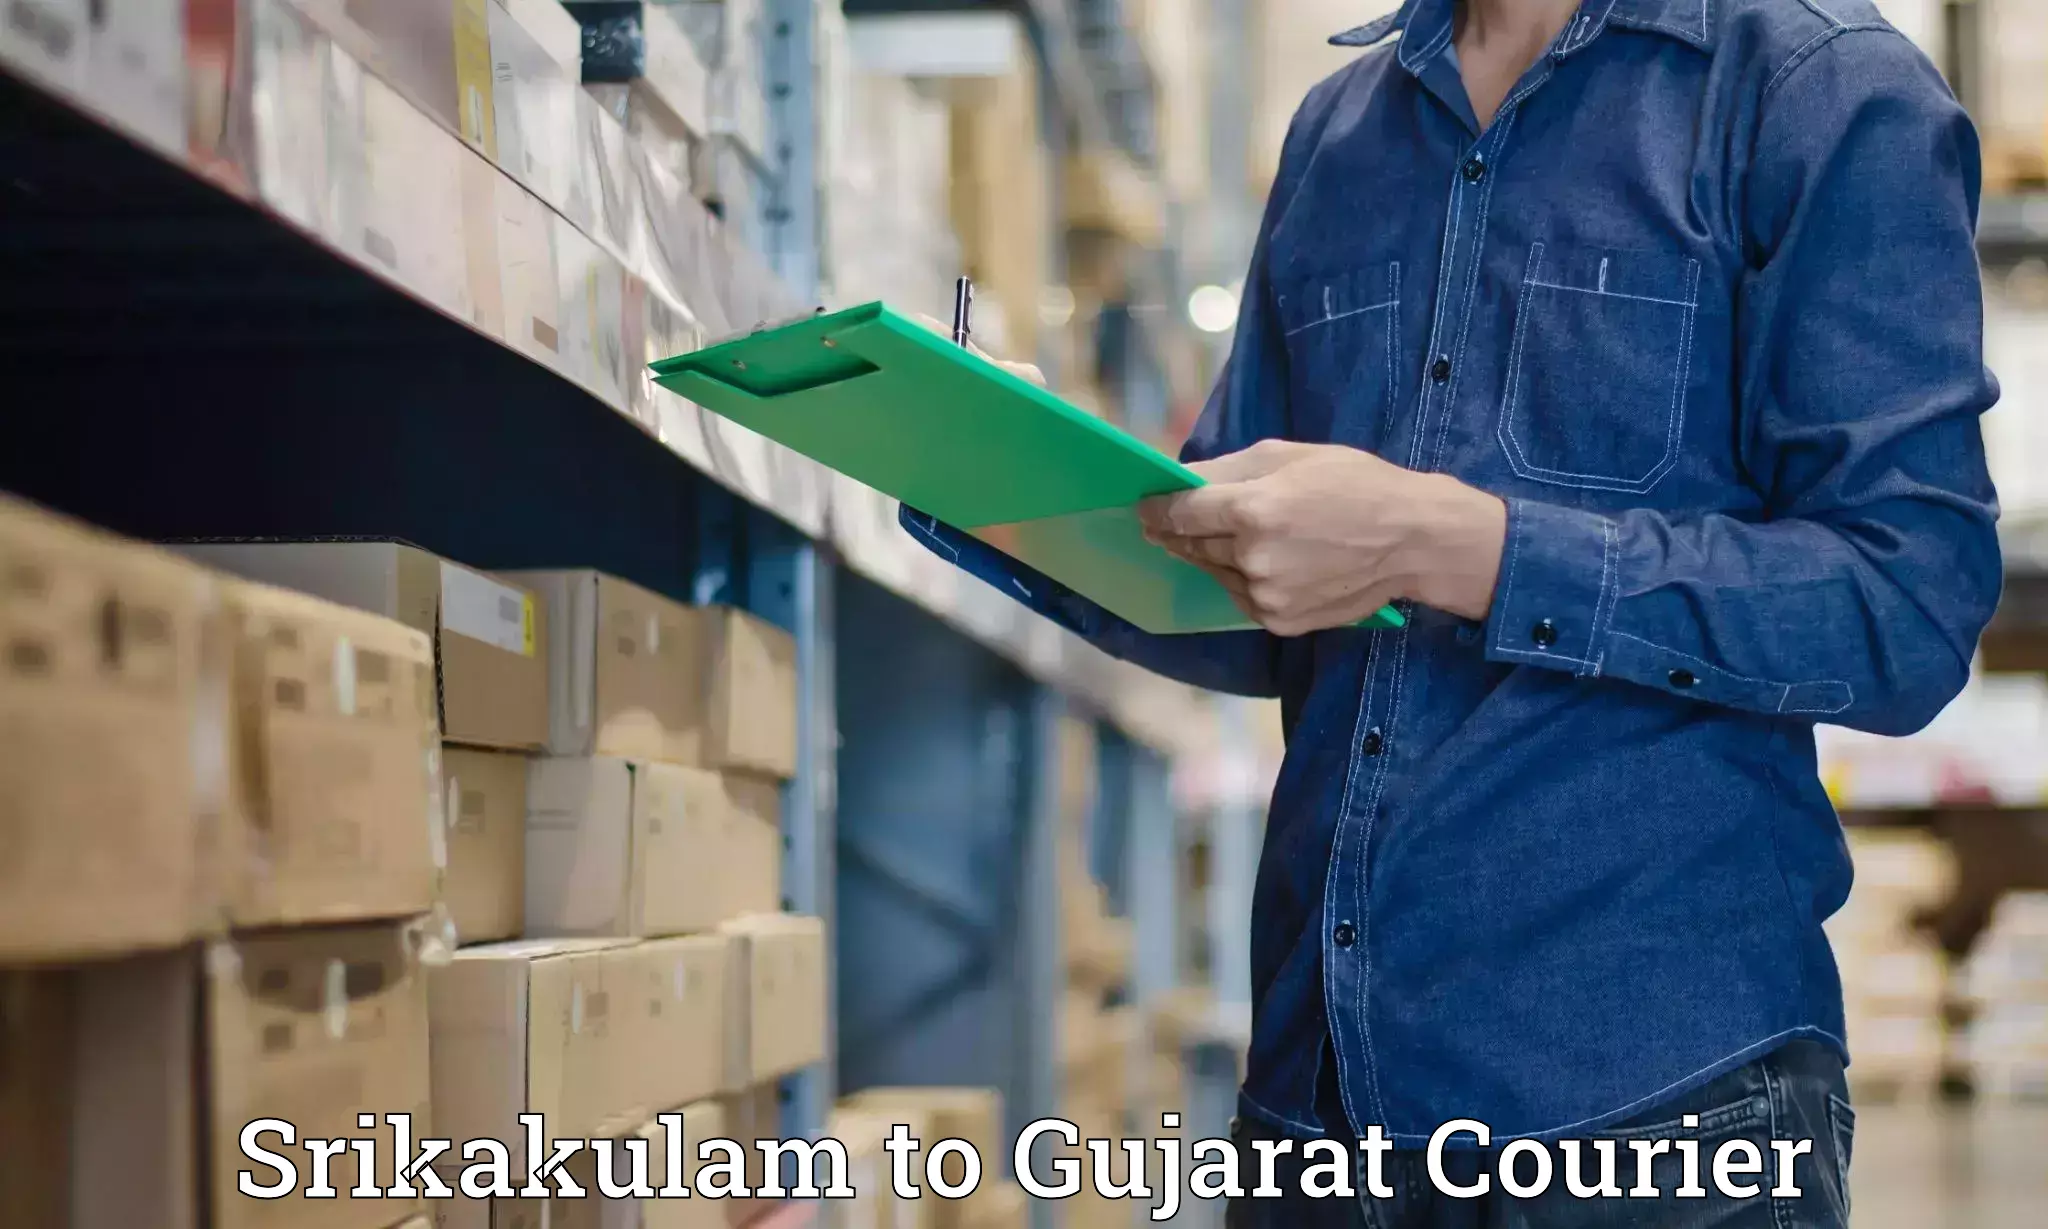 Baggage transport scheduler Srikakulam to Gujarat